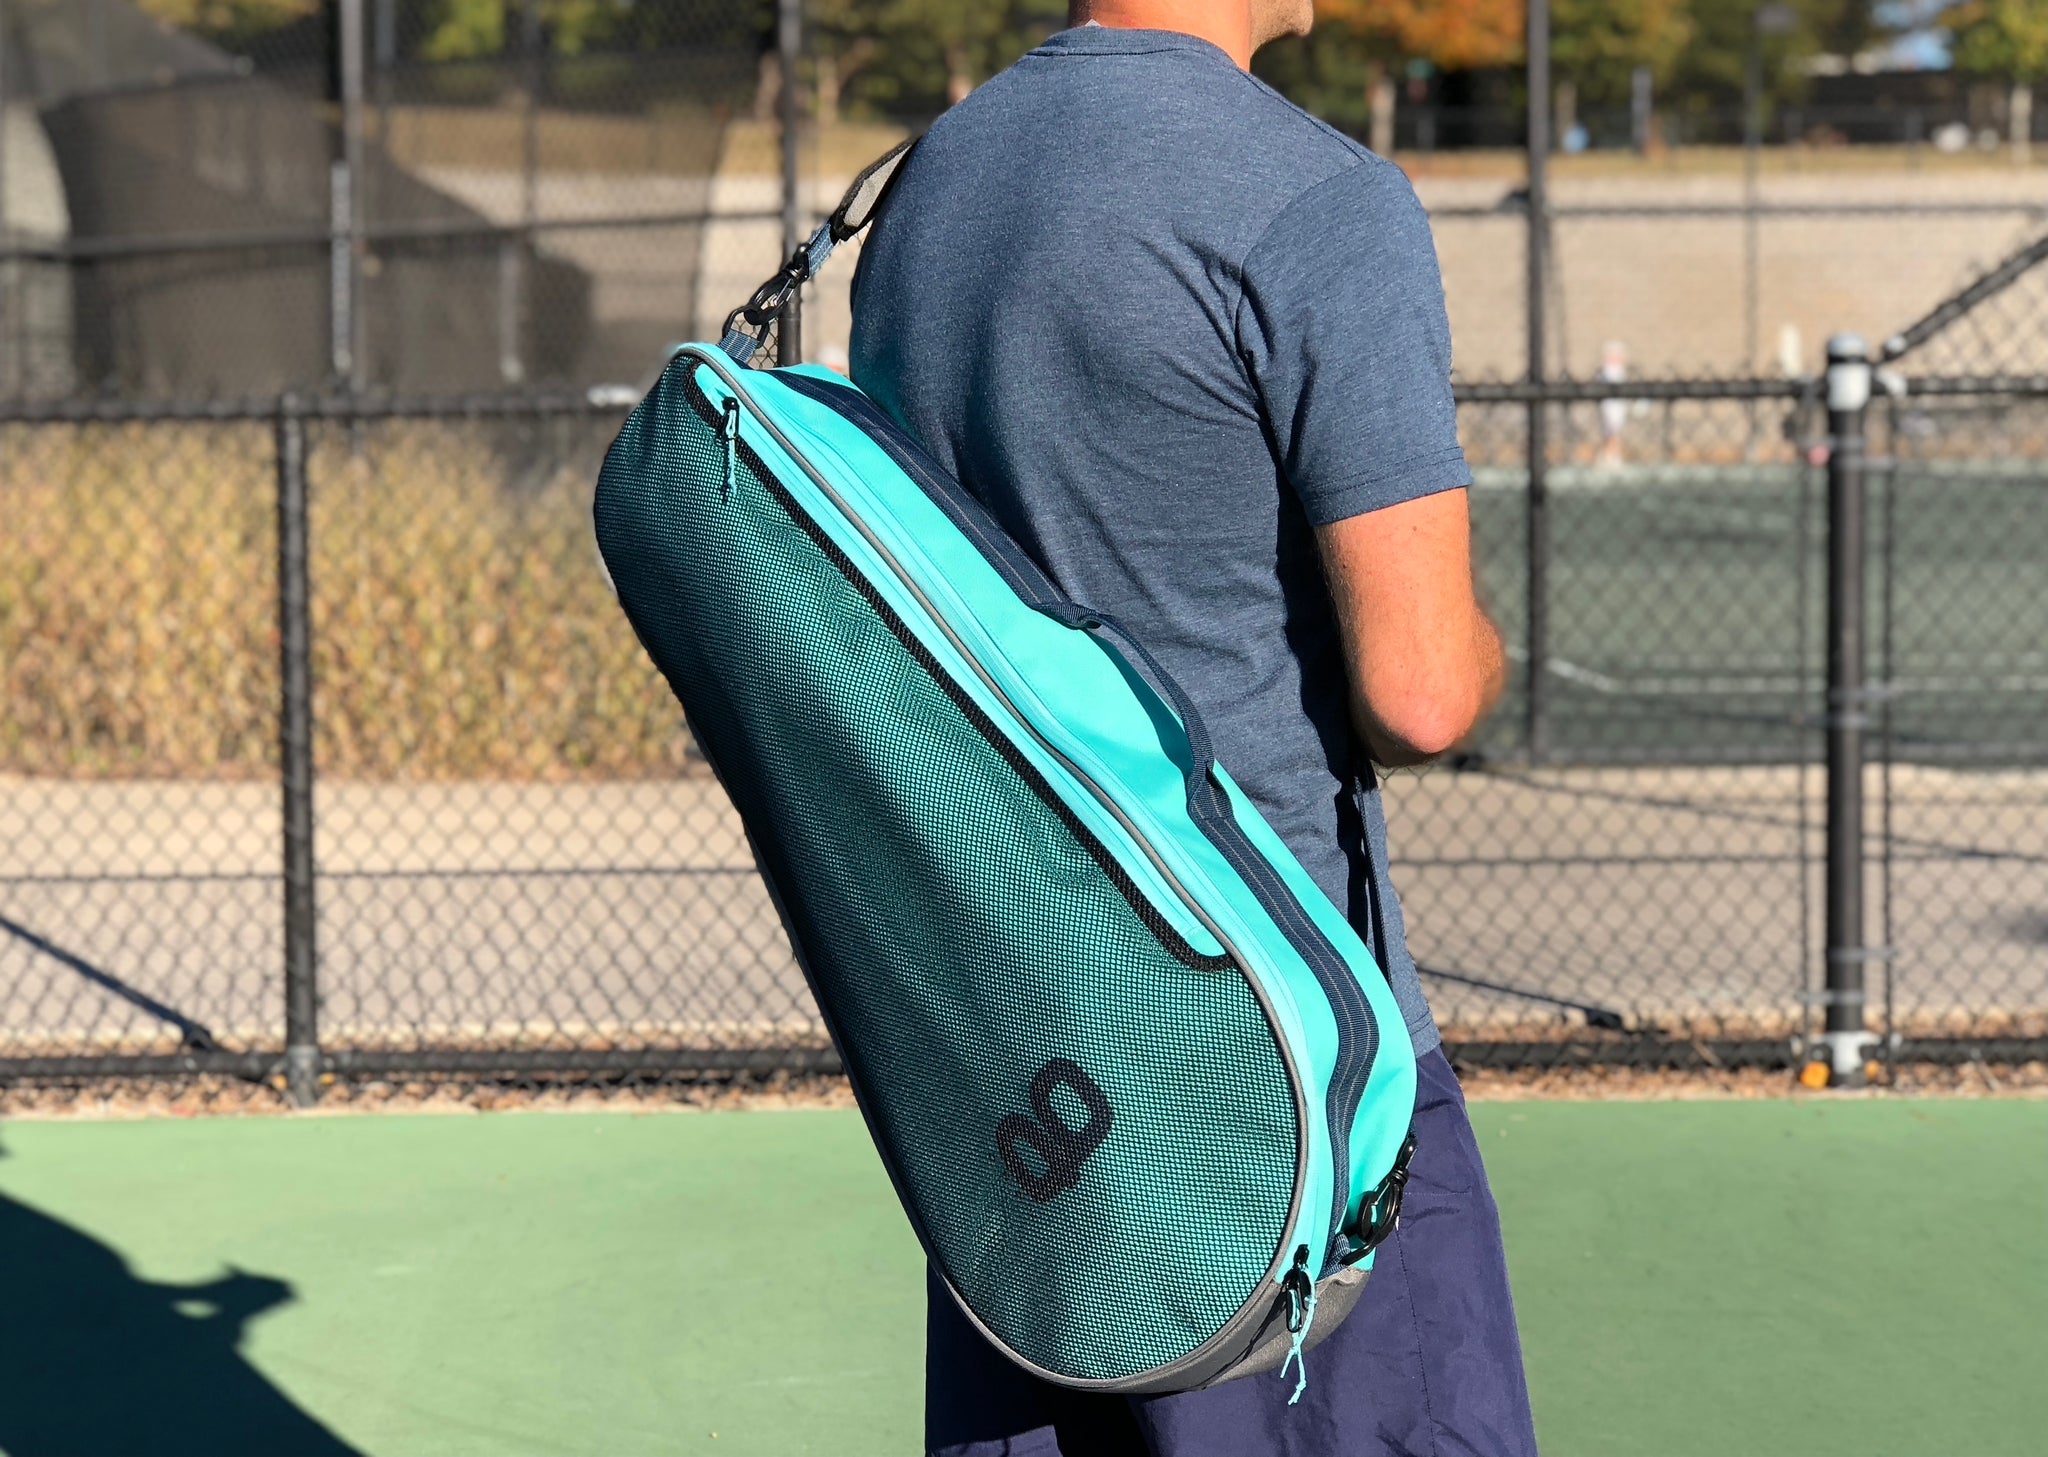 Hermès Tennis bag  Tennis fashion, Fashion, Tennis bag